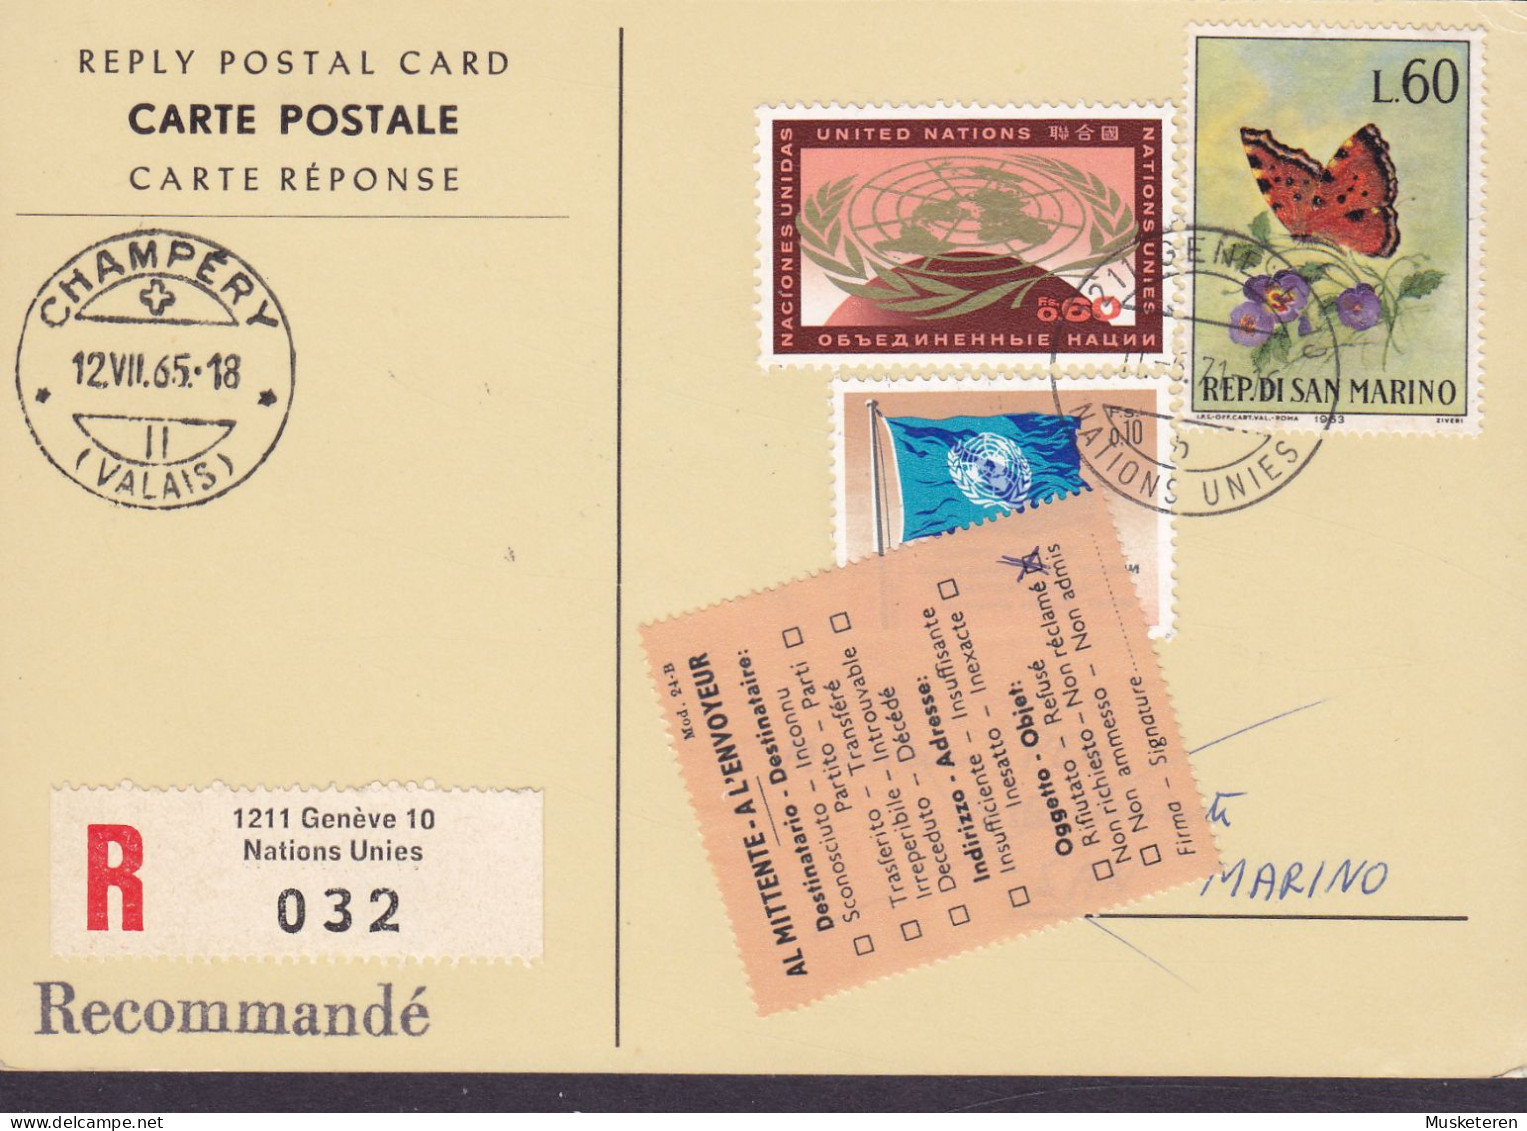 United Nations Reply Postal Card Recommandé Label GENÉVE 1971 SAN MARINO 'Non Réclamé' Vignette Butterfly Papillon - Covers & Documents